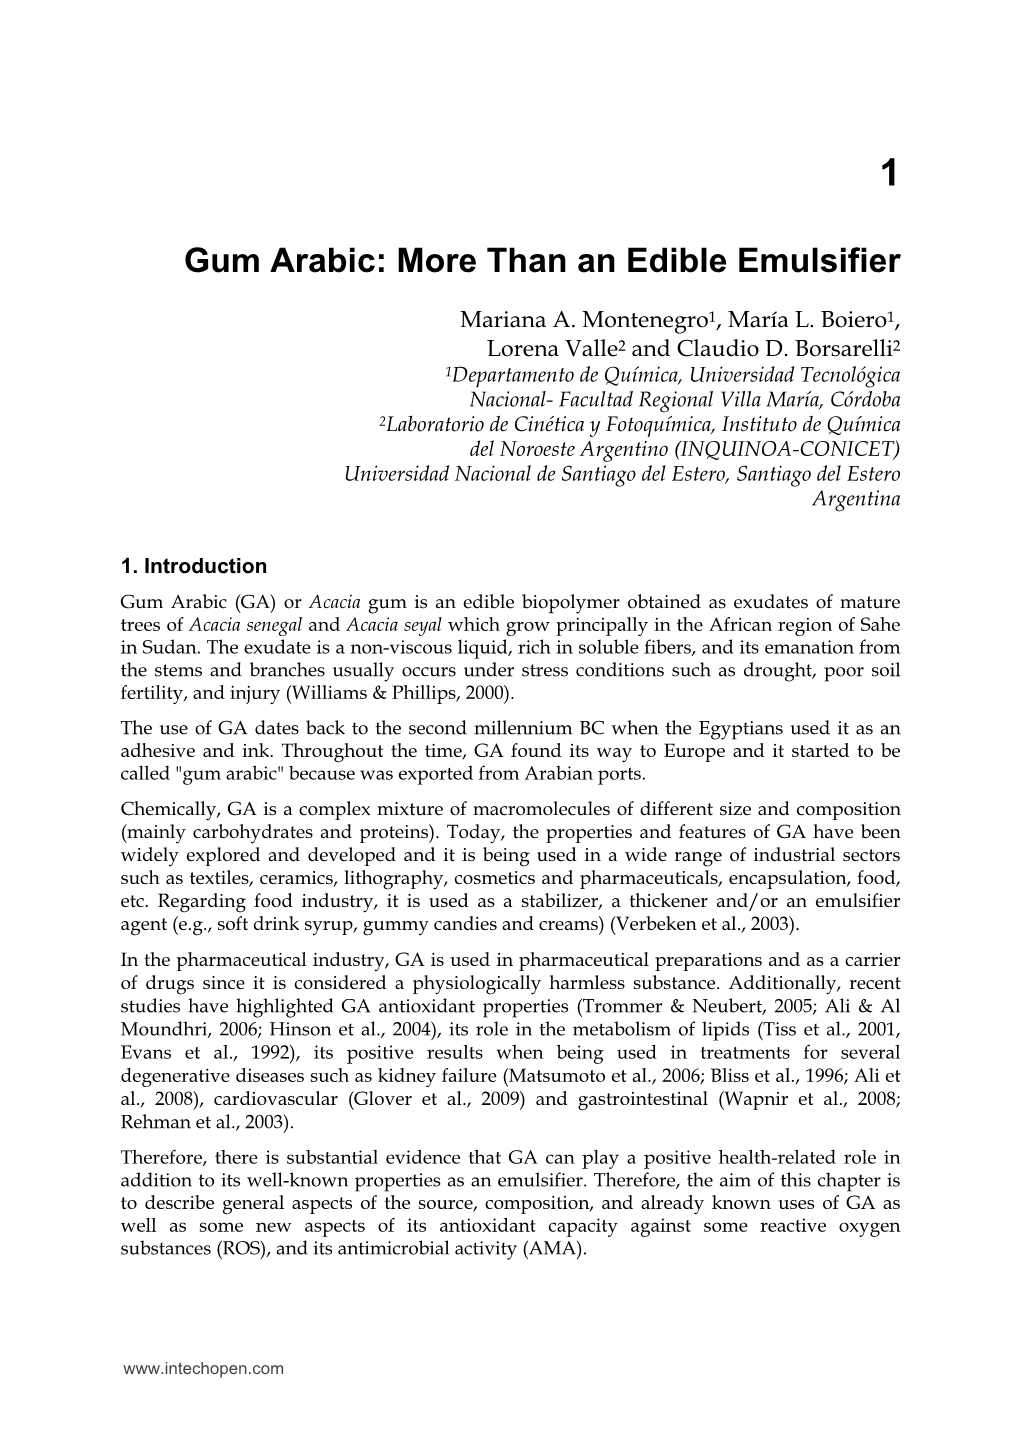 Gum Arabic: More Than an Edible Emulsifier